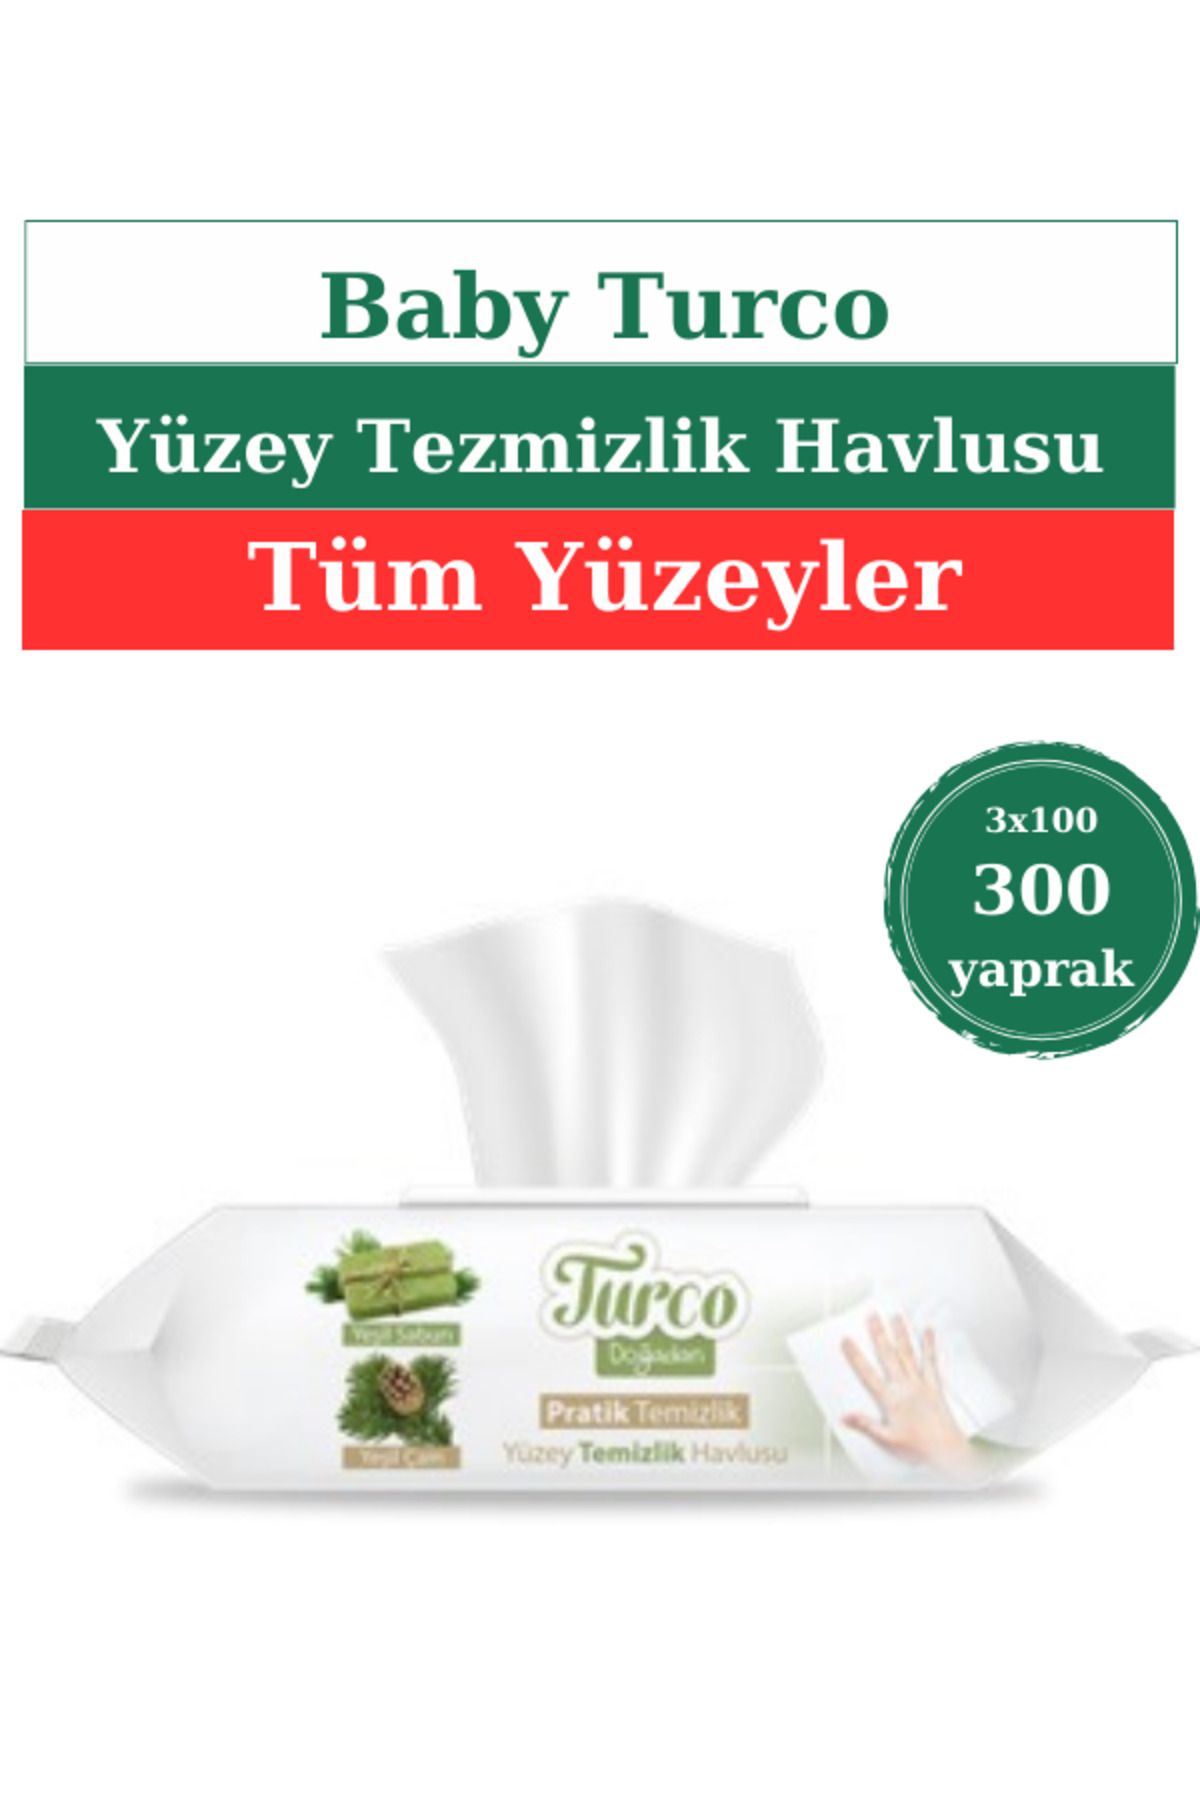 Turco Doğadan Pratik Temizlik Pratik Temizlik Yüzey Temizlik Havlusu 3x100 (300 Yaprak)